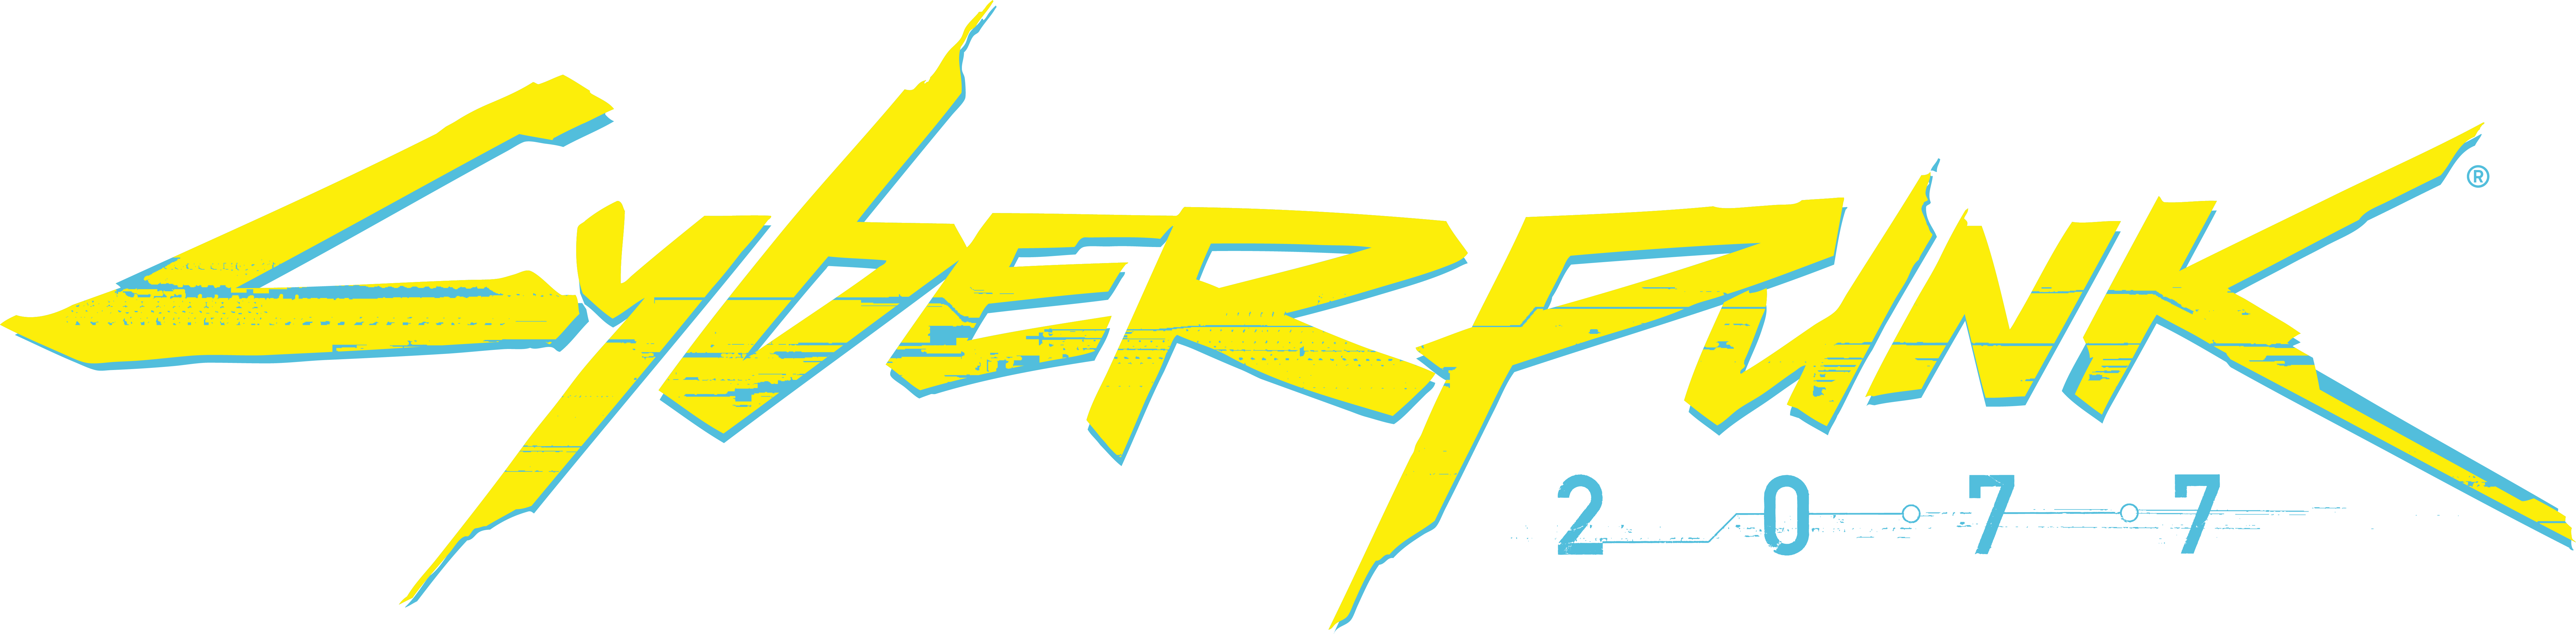 Cyberpunk 2077 logo